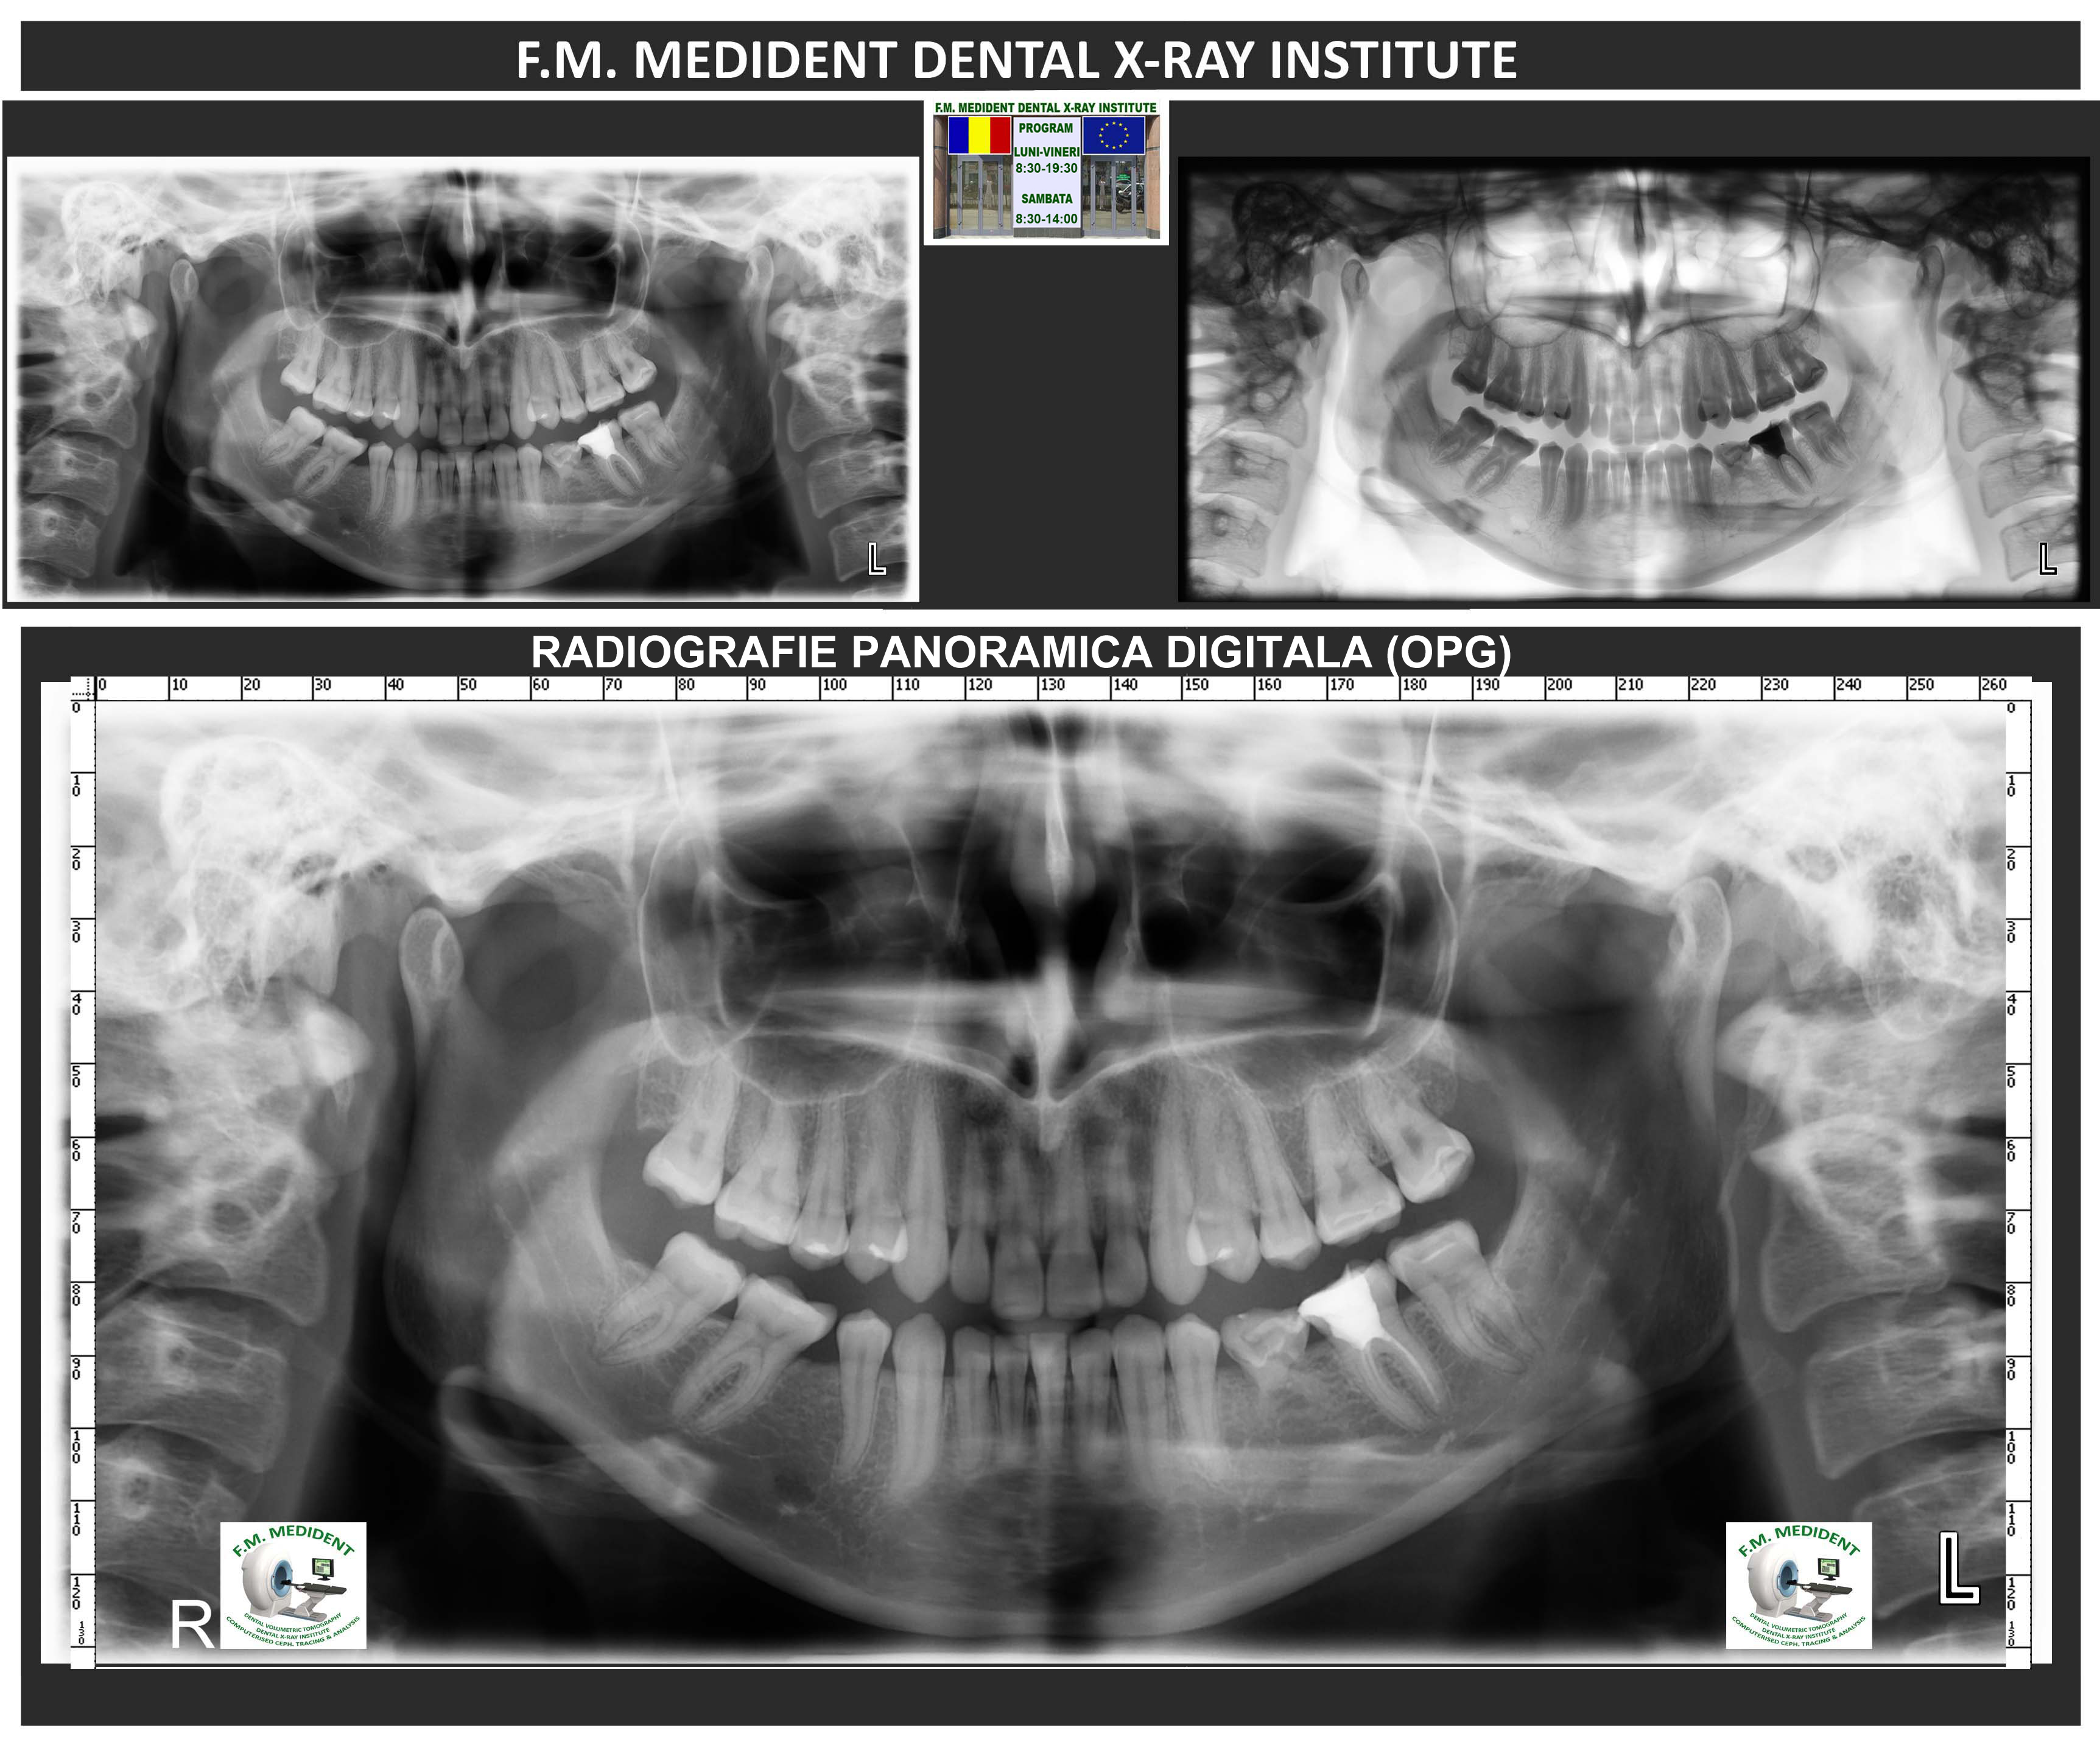 Digital panoramic radiography - bite block